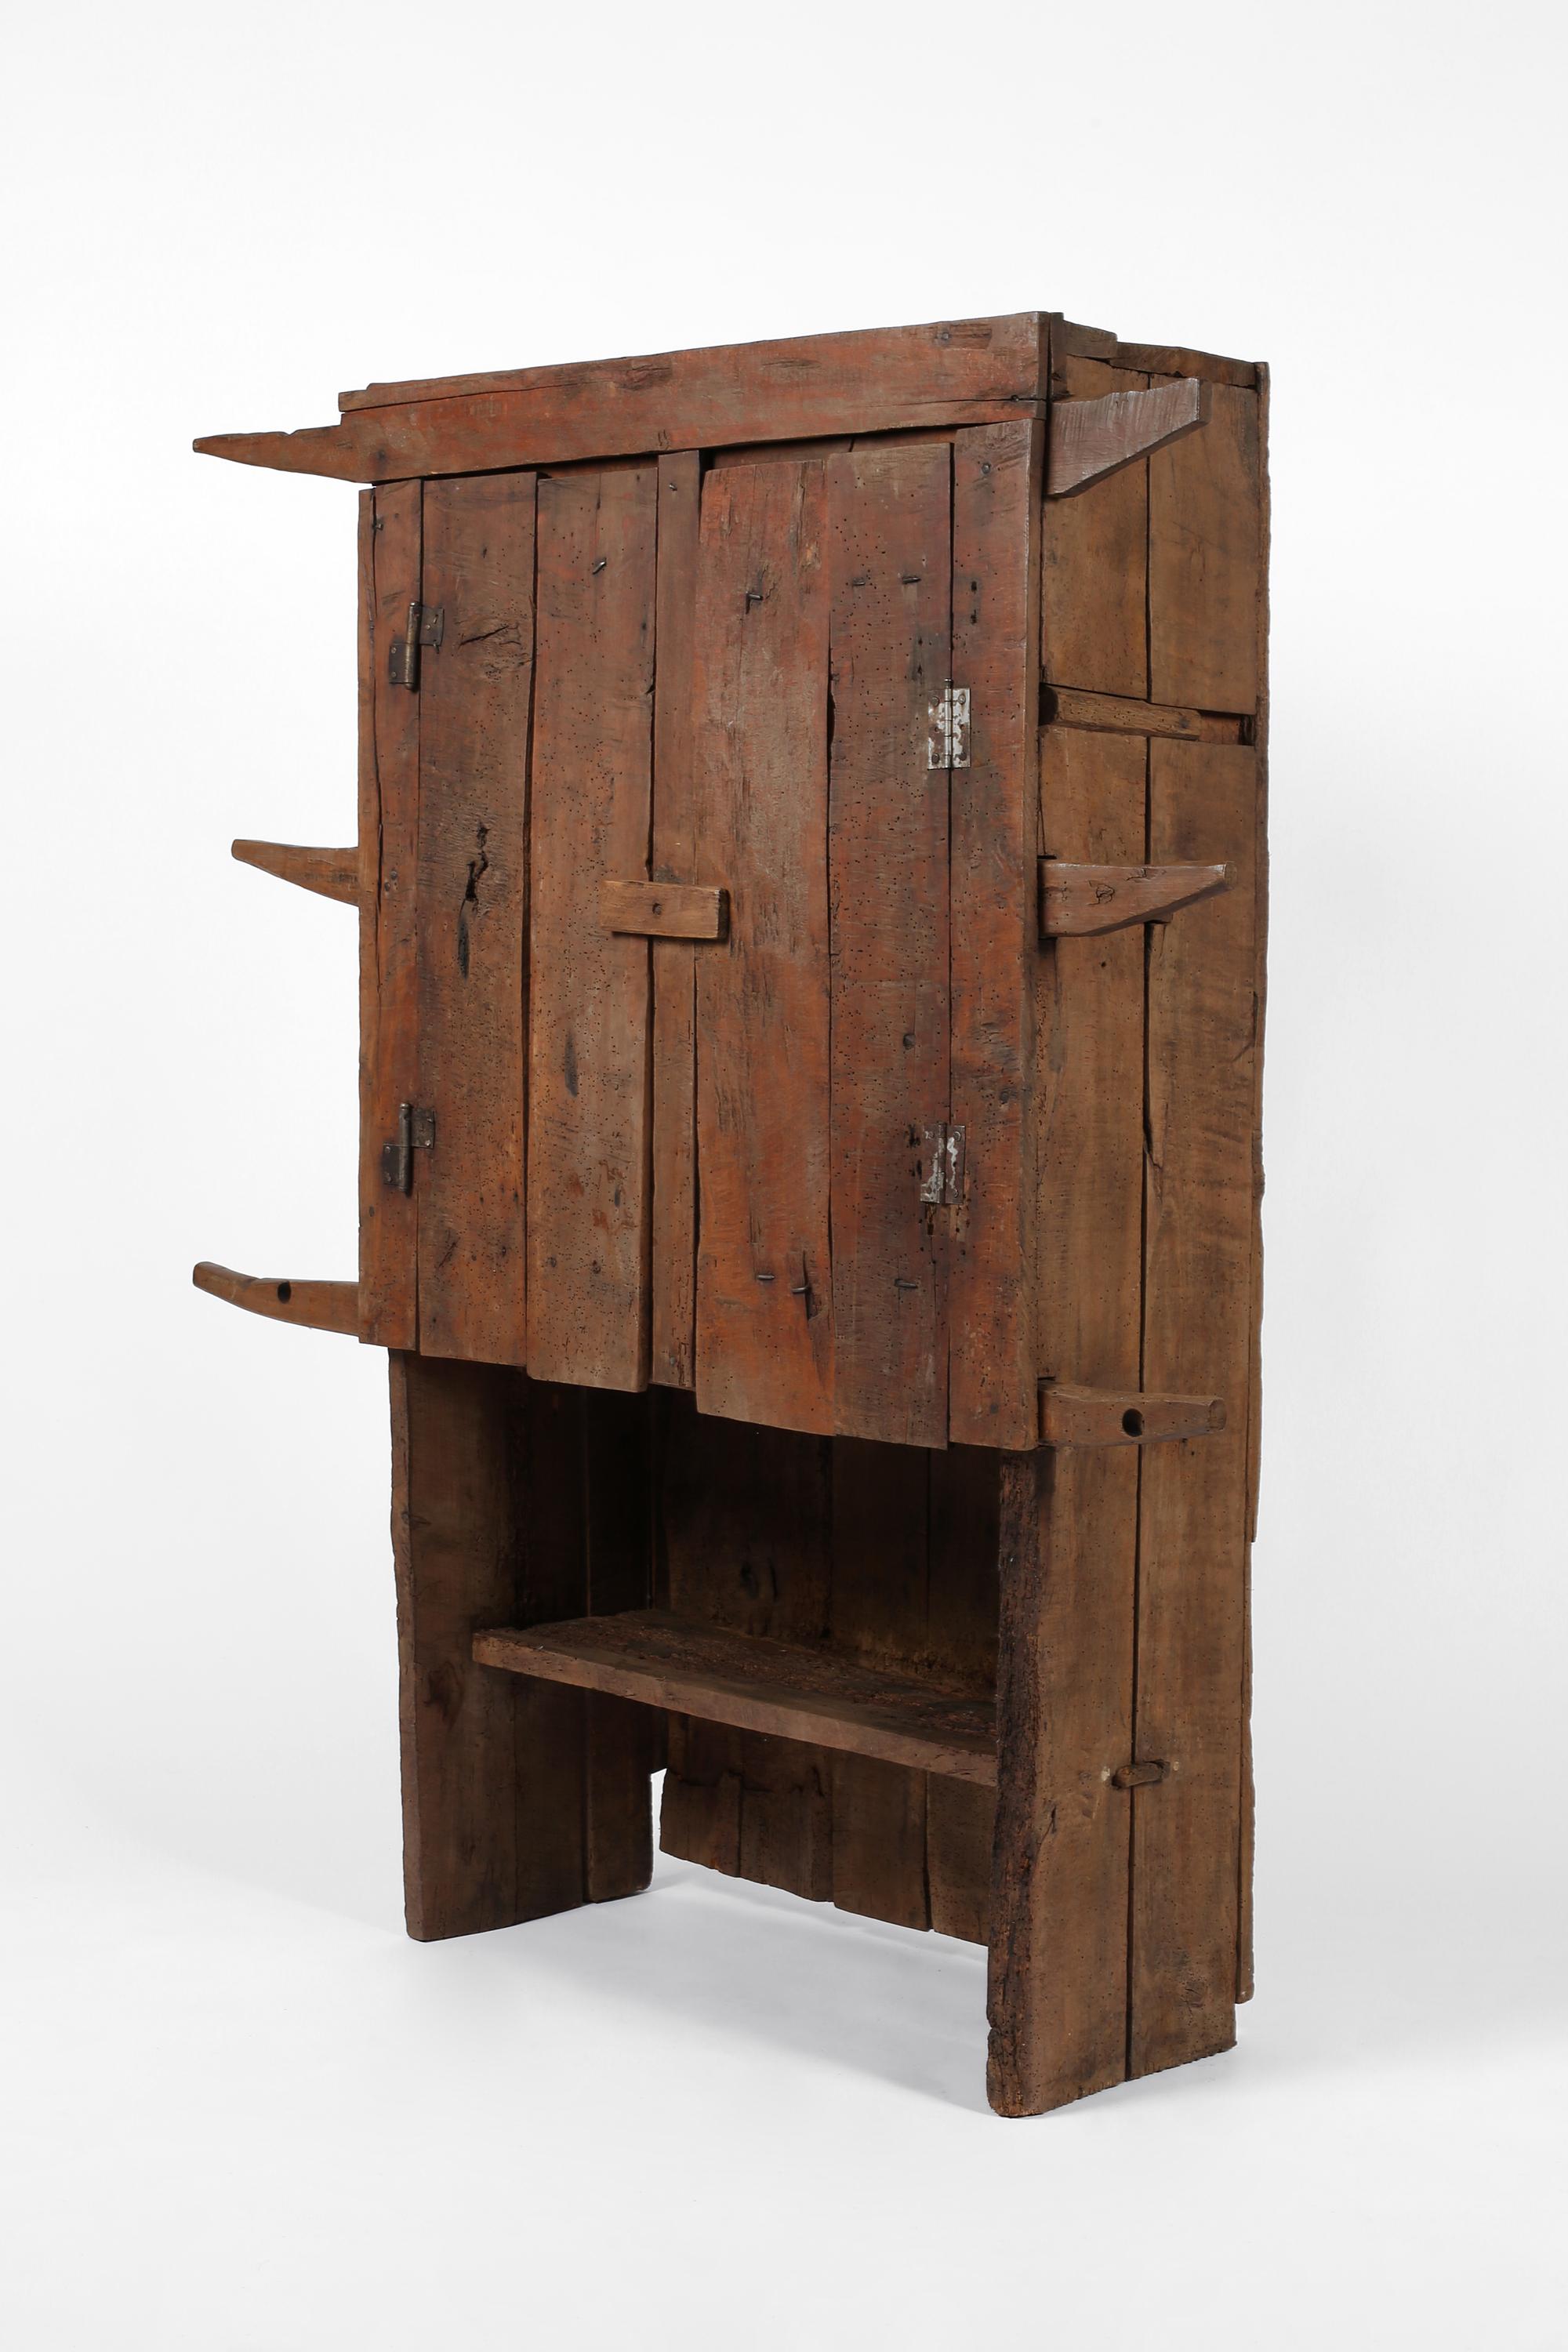 Ein aussagekräftiger Schrank aus dem 18. Jahrhundert aus der Karpatenregion. Primitive Konstruktion aus grob behauenem gemischtem Hartholz, mit zwei geplankten Türen, die sich öffnen lassen, um ein einzelnes Regal im Inneren und ein einzelnes